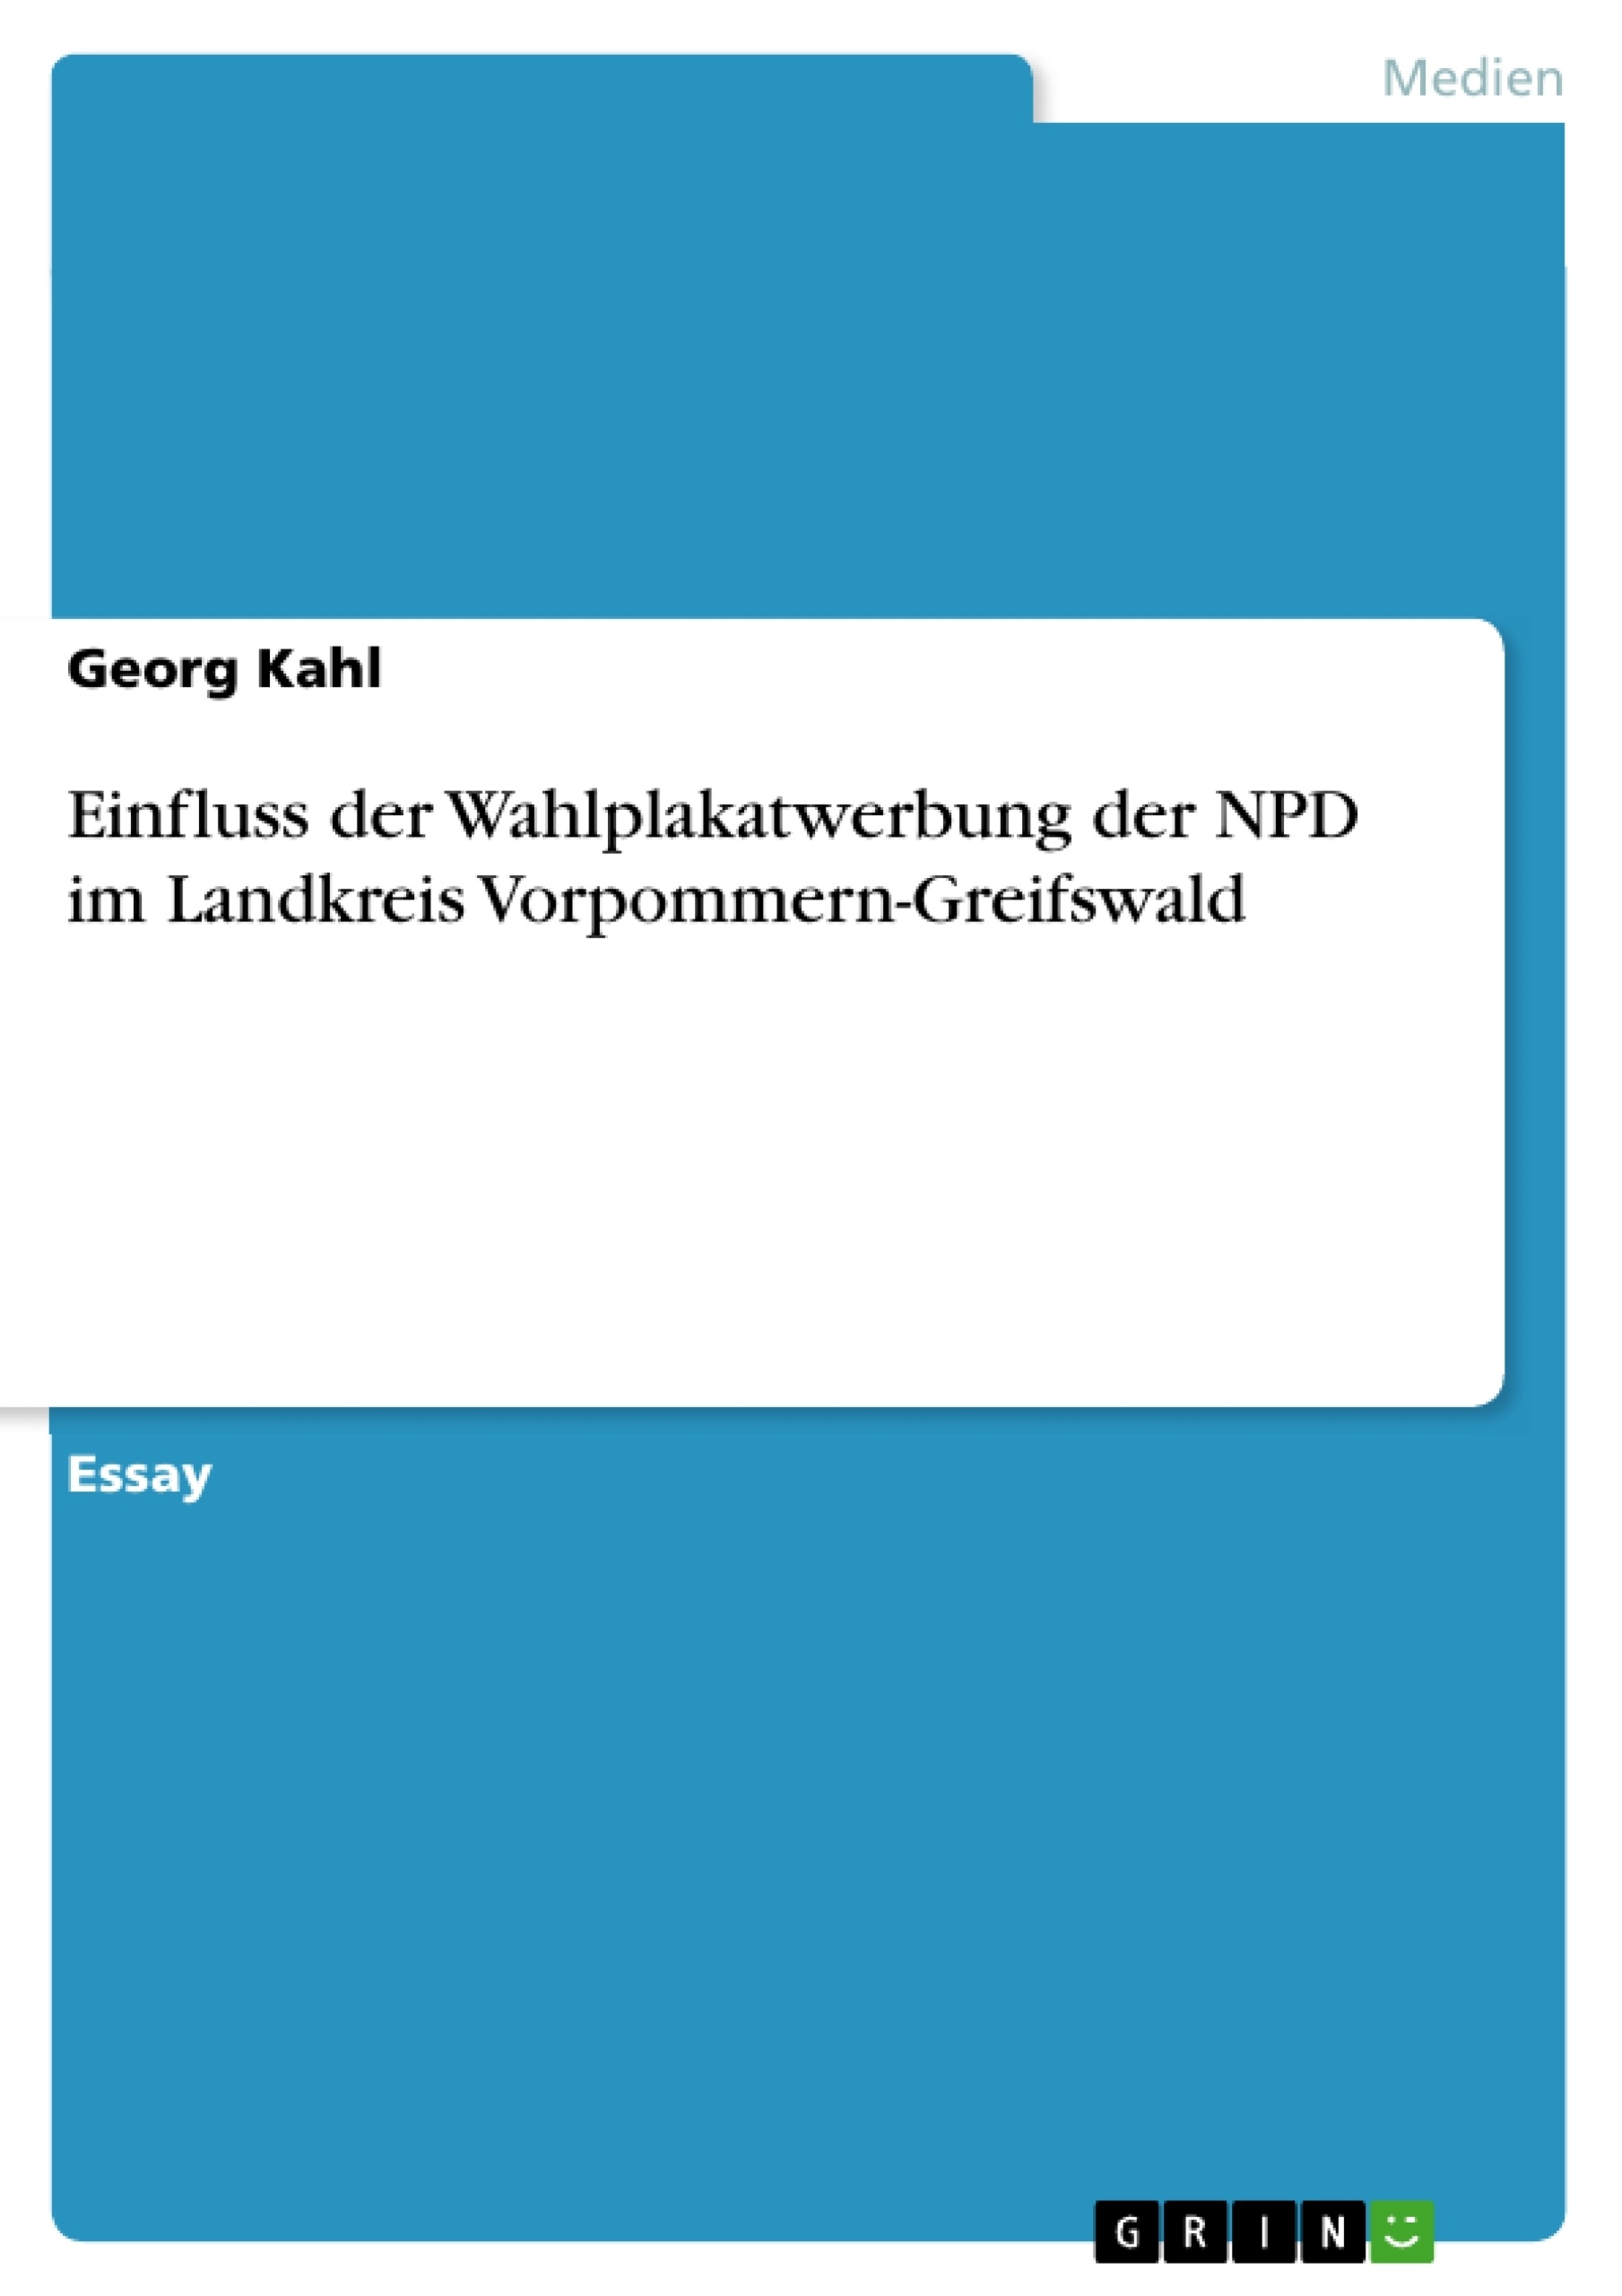 Title: Einfluss der Wahlplakatwerbung der NPD im Landkreis Vorpommern-Greifswald